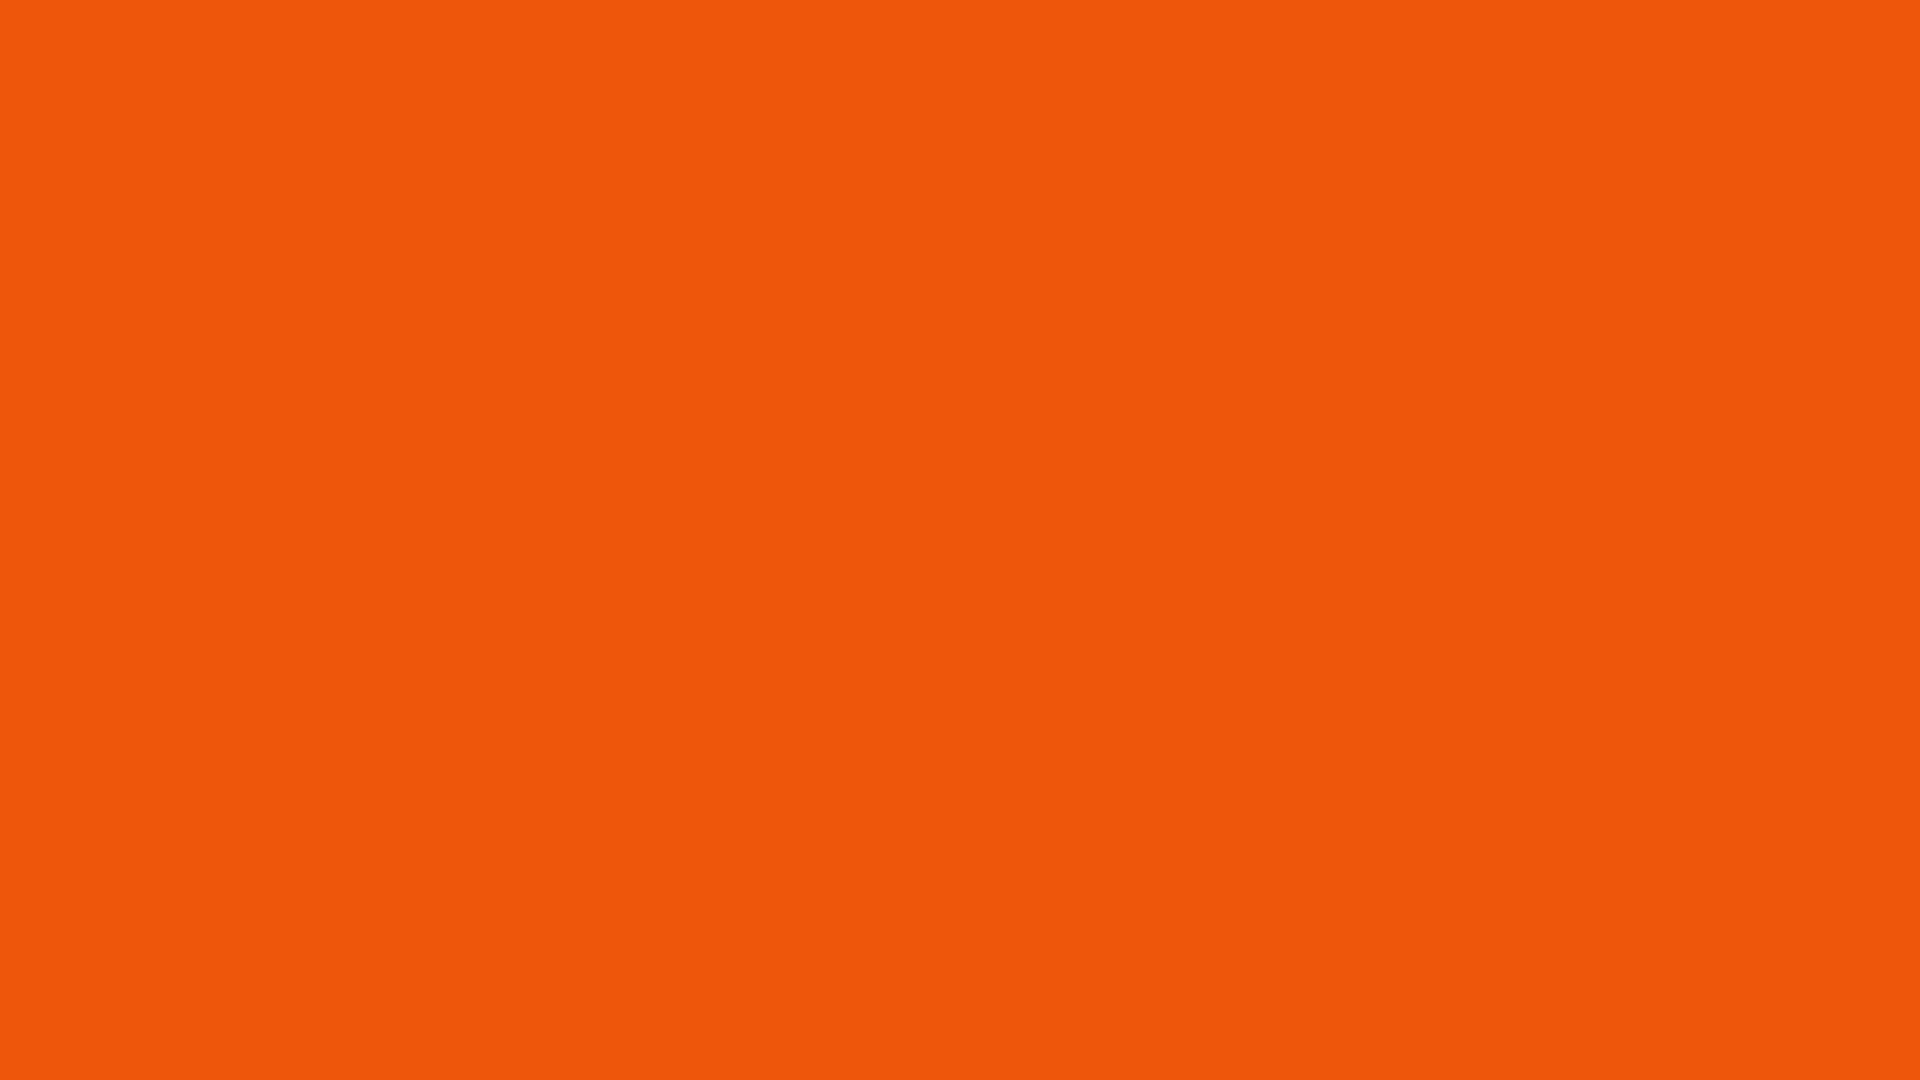 Plain Orange Background